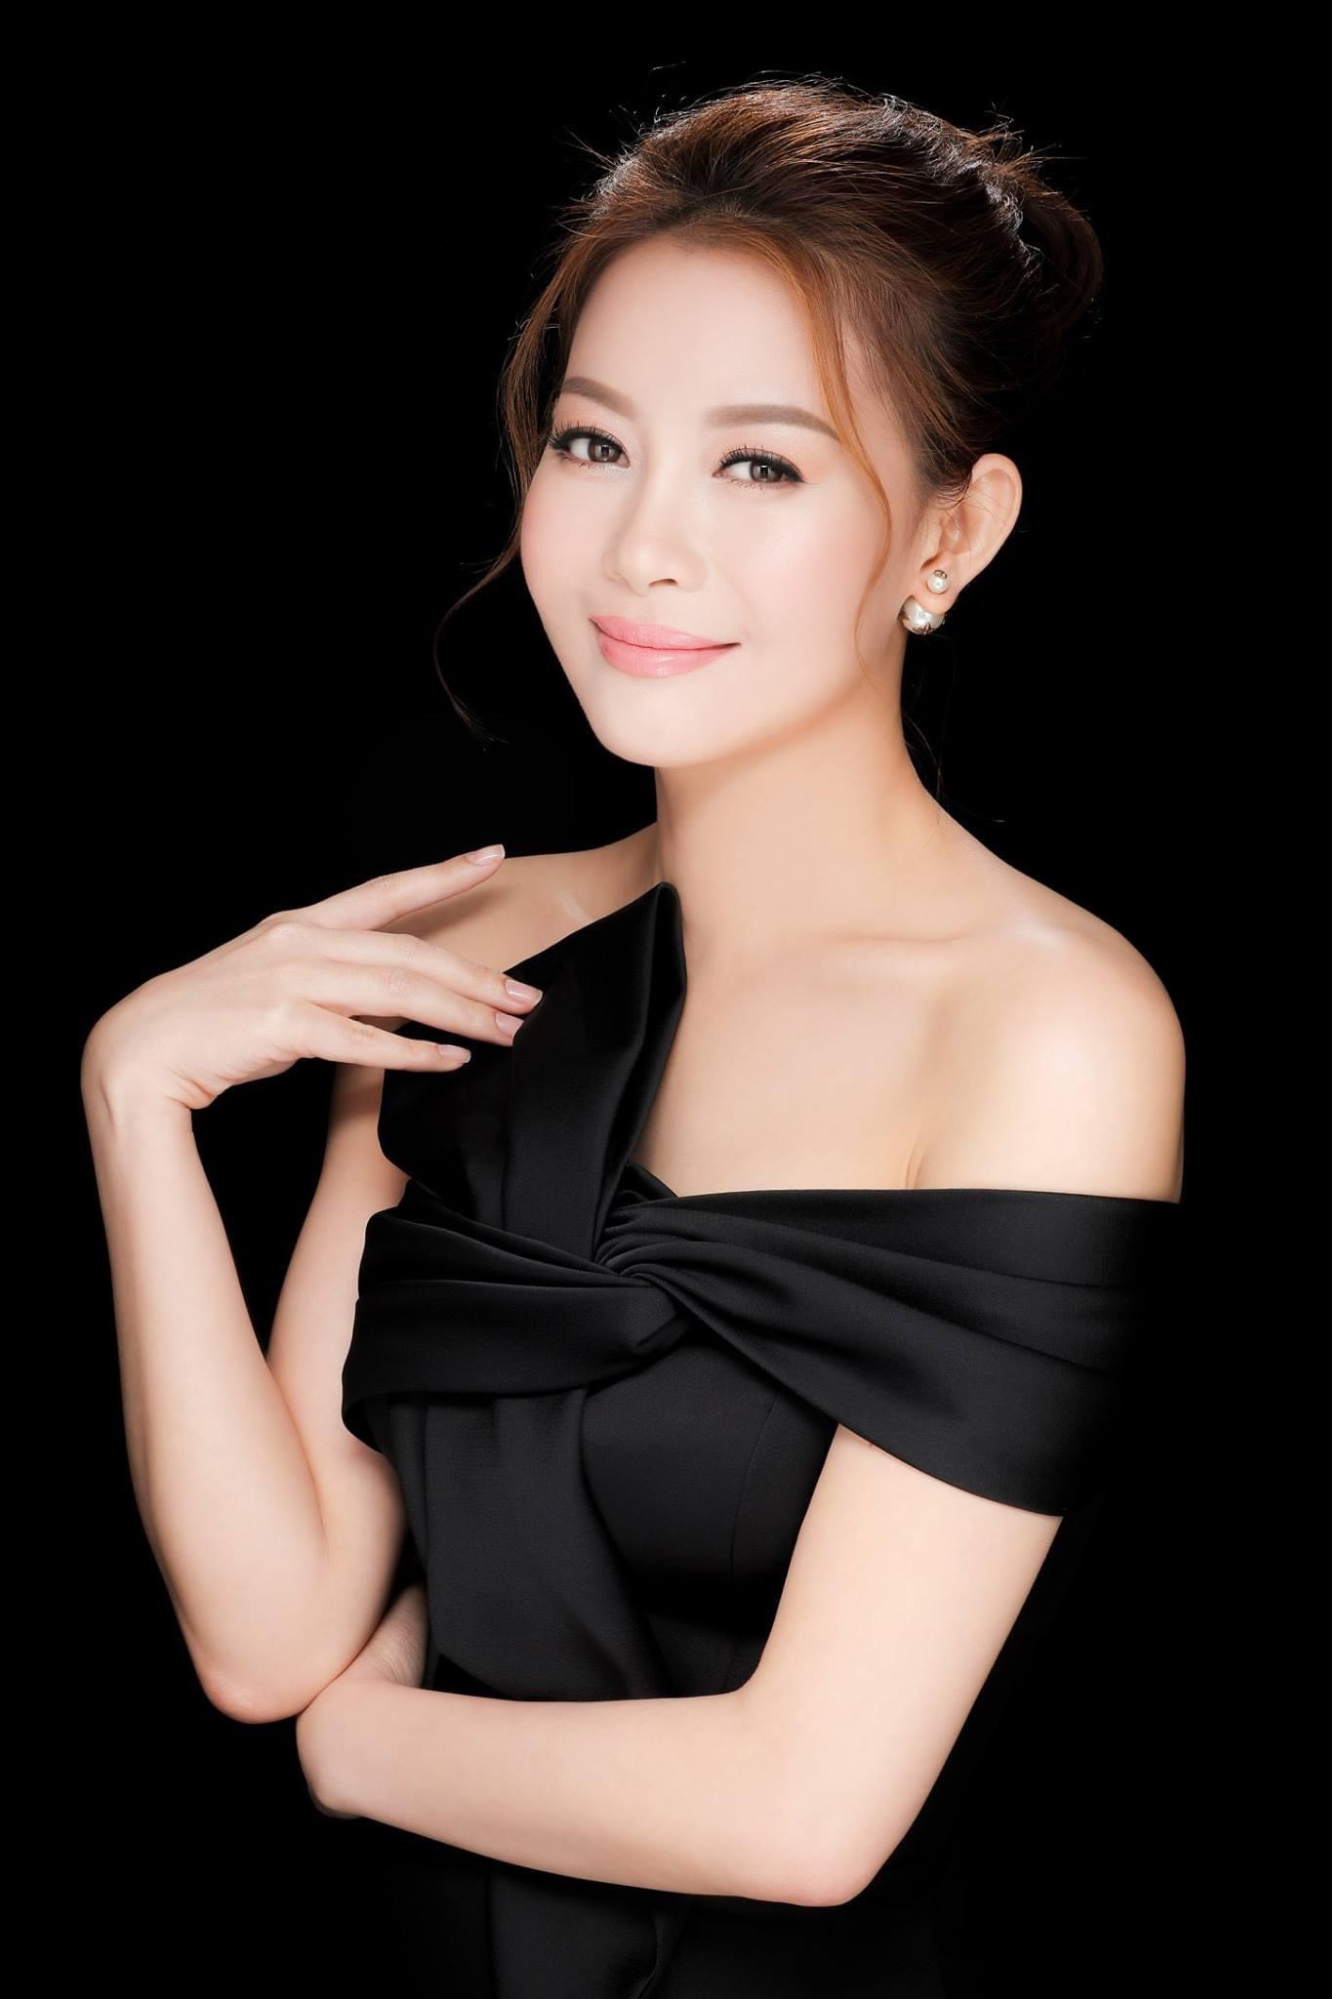 Hoa hậu Ngọc Châu bị chỉ trích 'nặng vía', Hoa hậu Hải Dương lên tiếng bênh vực